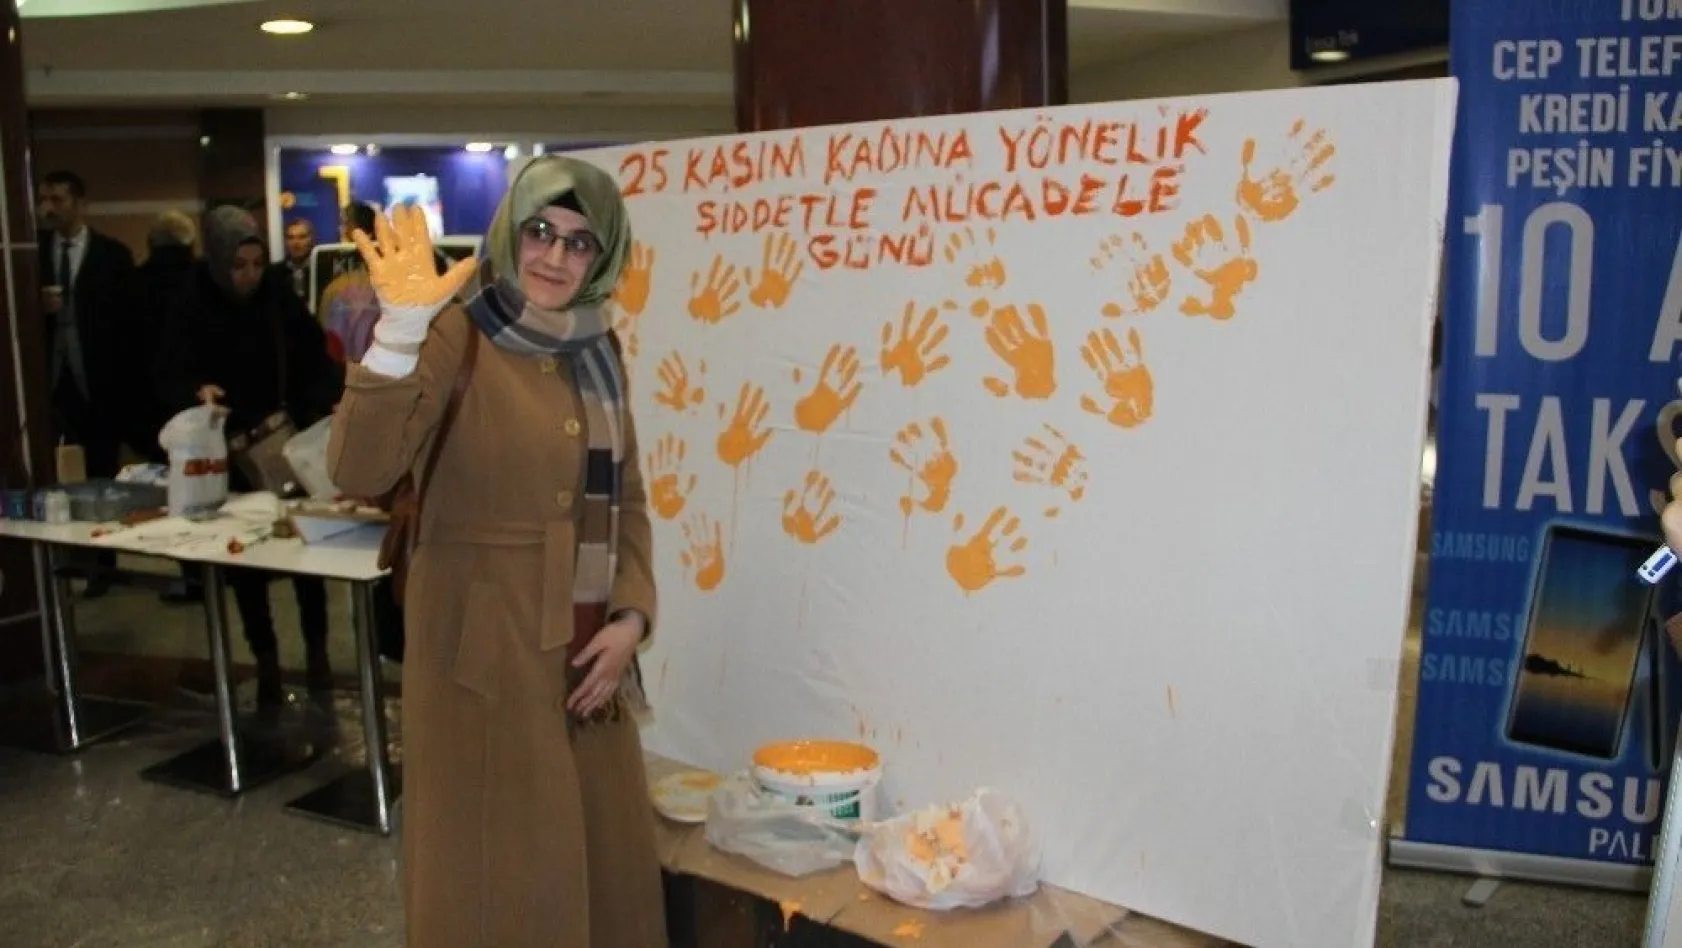 Erzurum'da Kadına Yönelik Şiddete Karşı Uluslararası Mücadele Günü etkinlikleri
